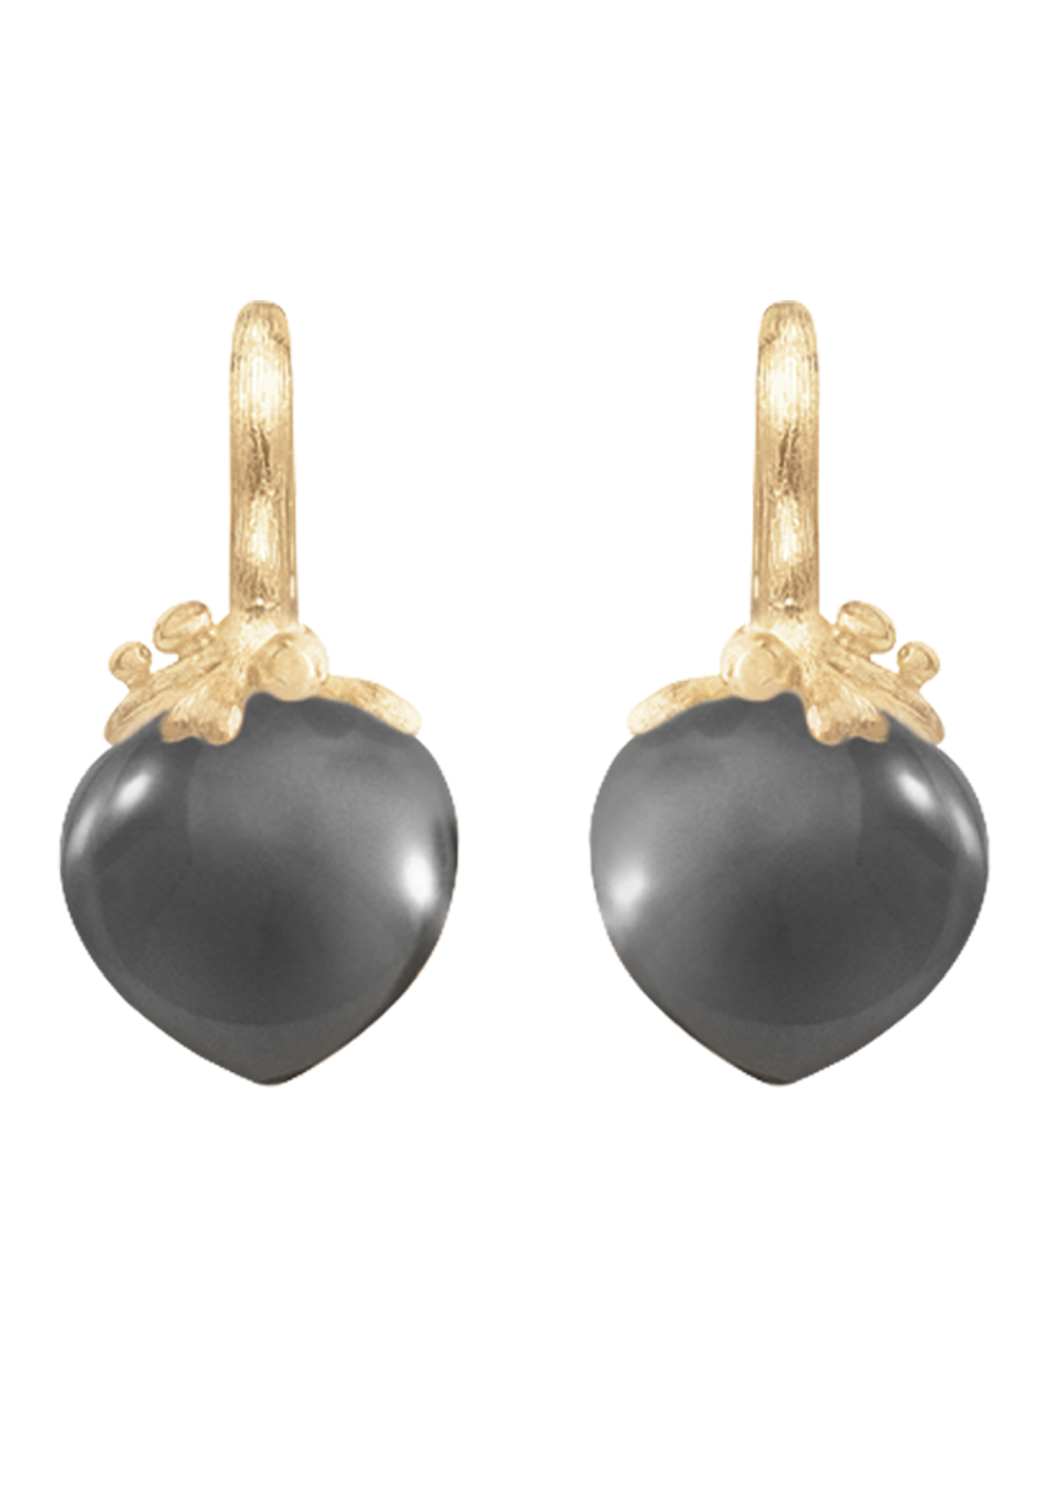 Ole Lynggaard Dew Drop Filigree 18KYG Grey Moonstone Earrings | Ref. A2723-407 | OsterJewelers.com